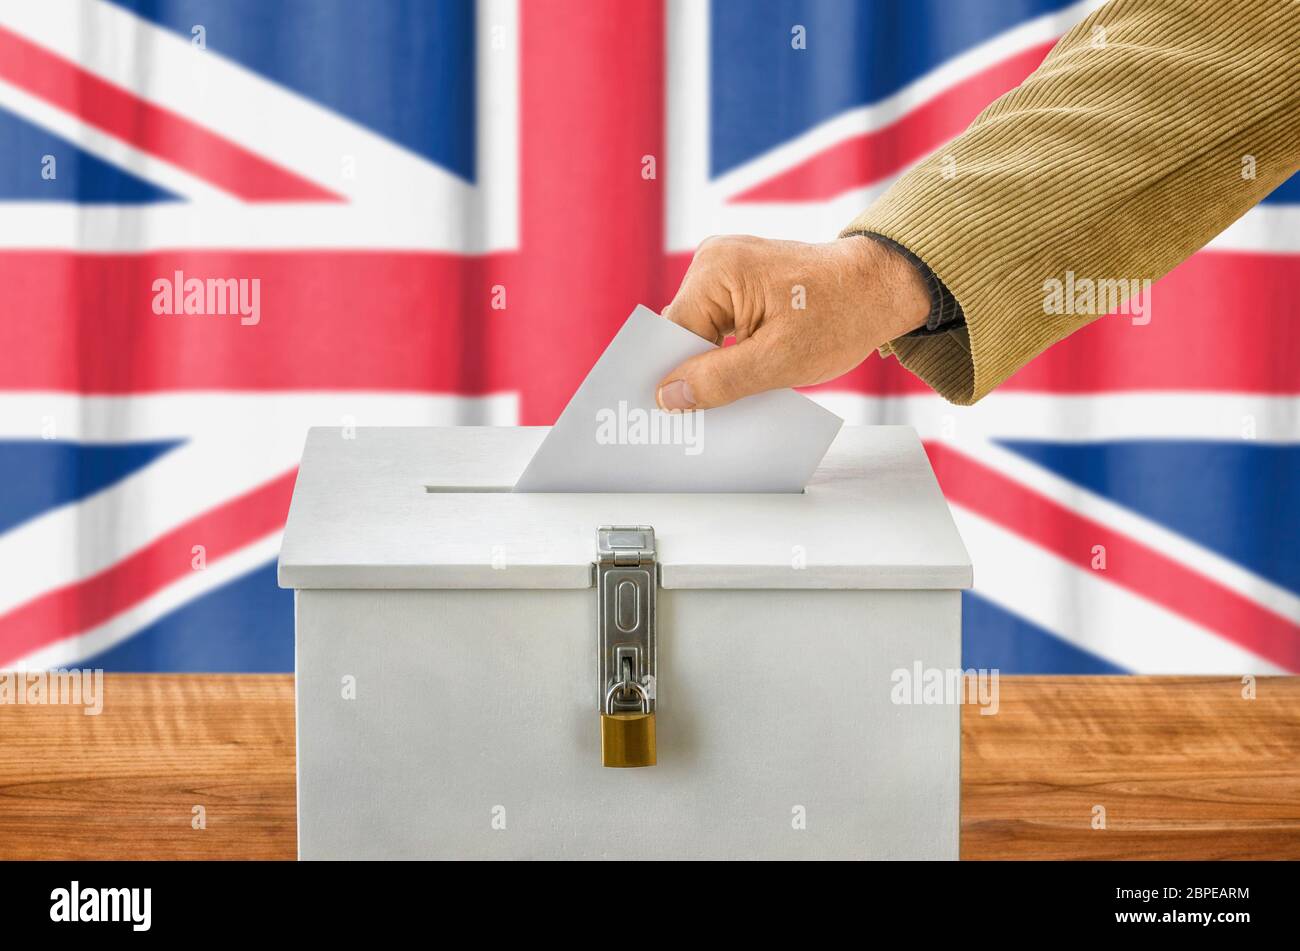 Mann wirft Stimmzettel in Wahlurne - Großbritannien Stock Photo